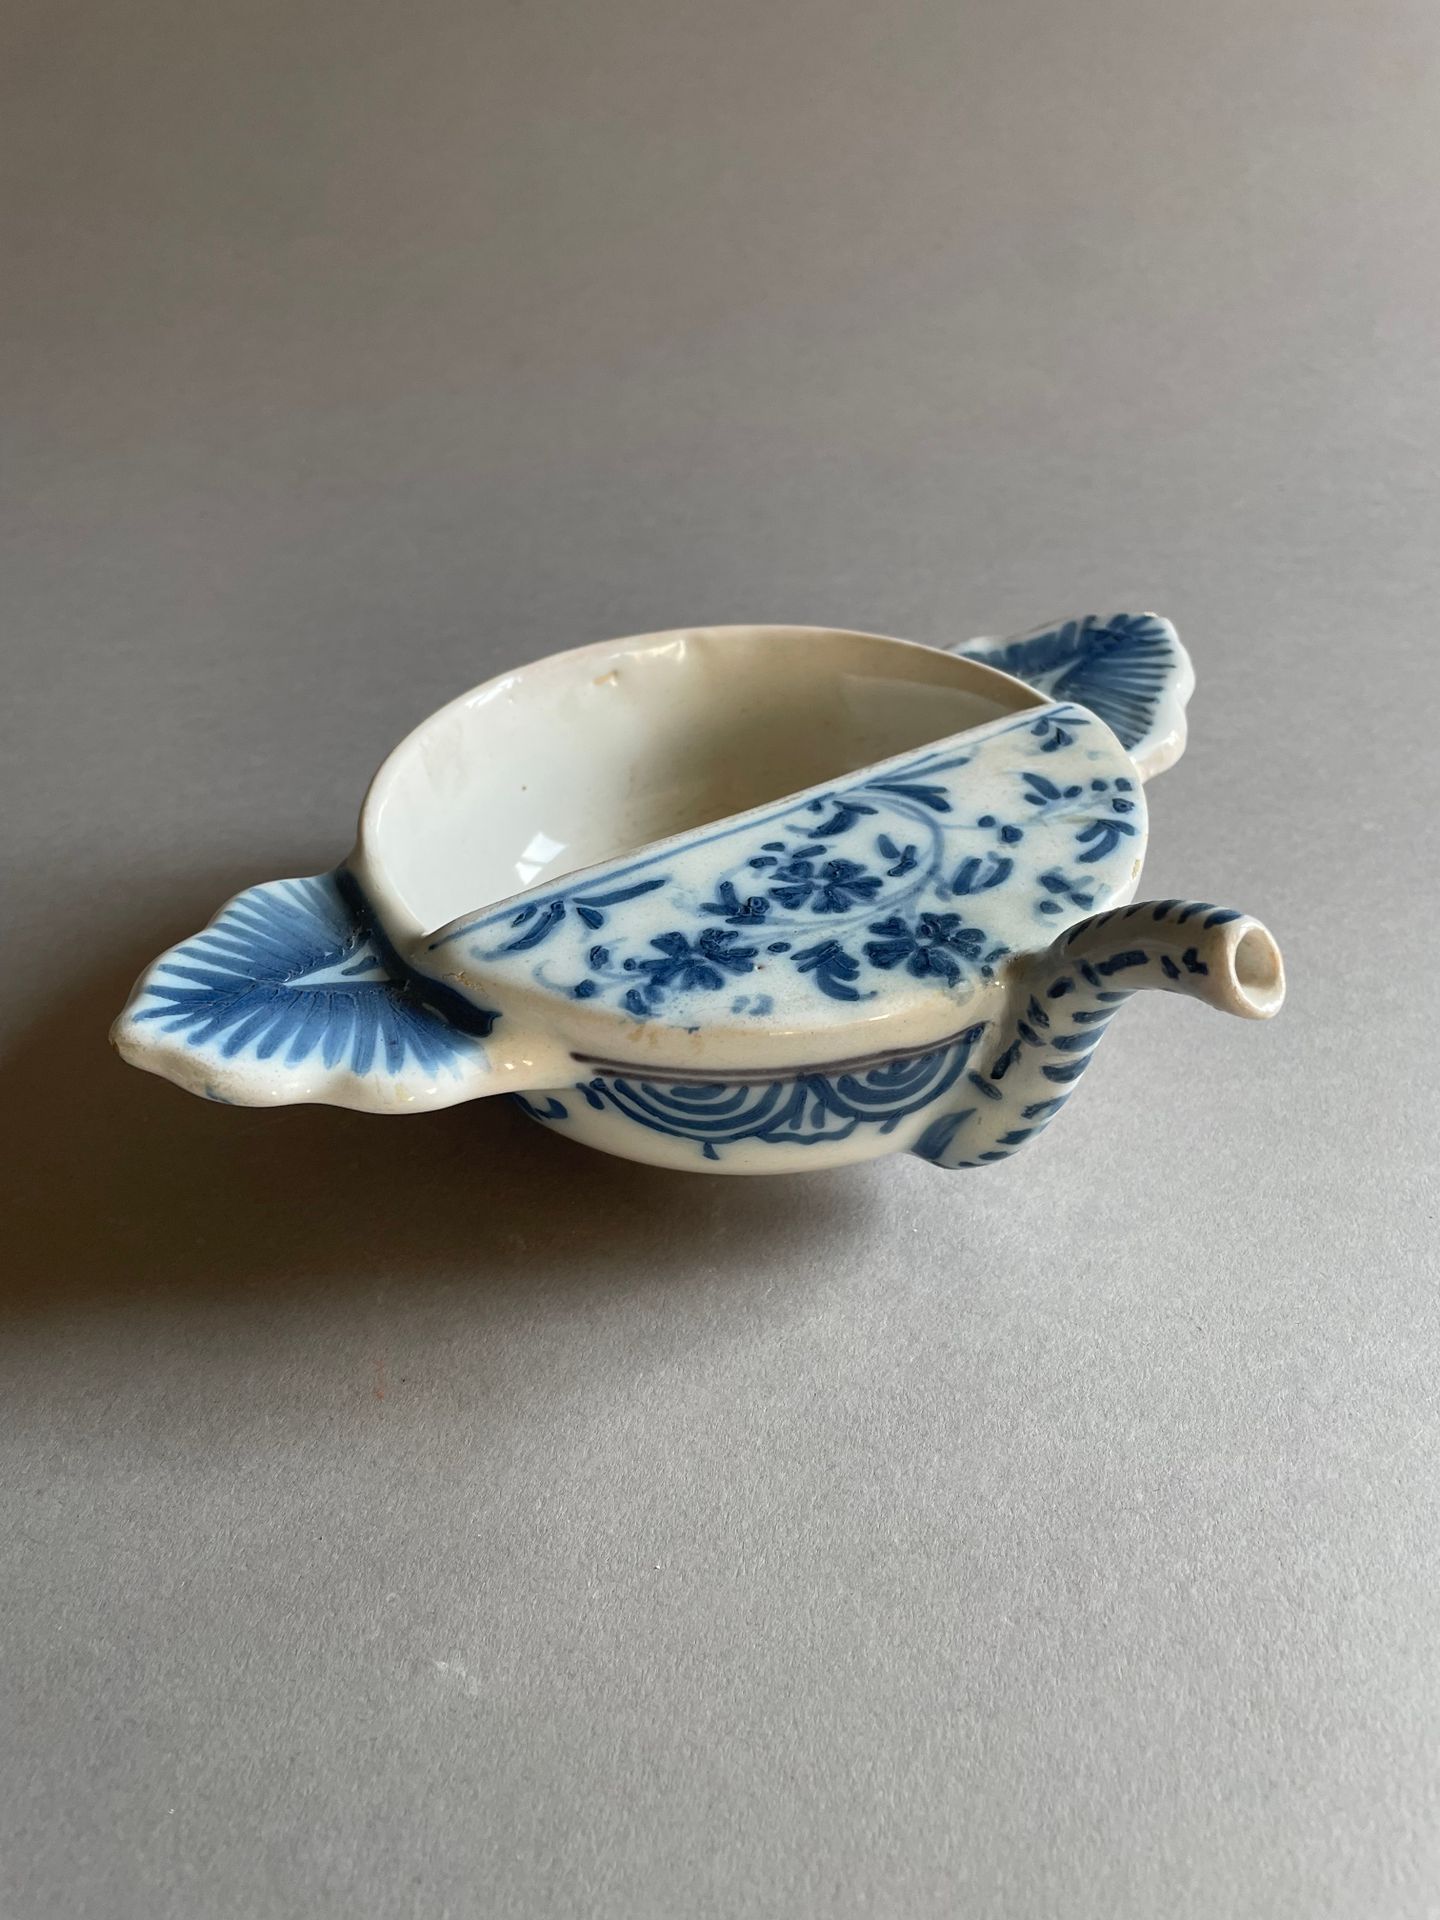 Lyon 带两侧把手的圆形病鸭，陶器，蓝色单色花枝、帷幔和梳叶装饰
18 世纪
长 23.5 厘米
(出水口修复）